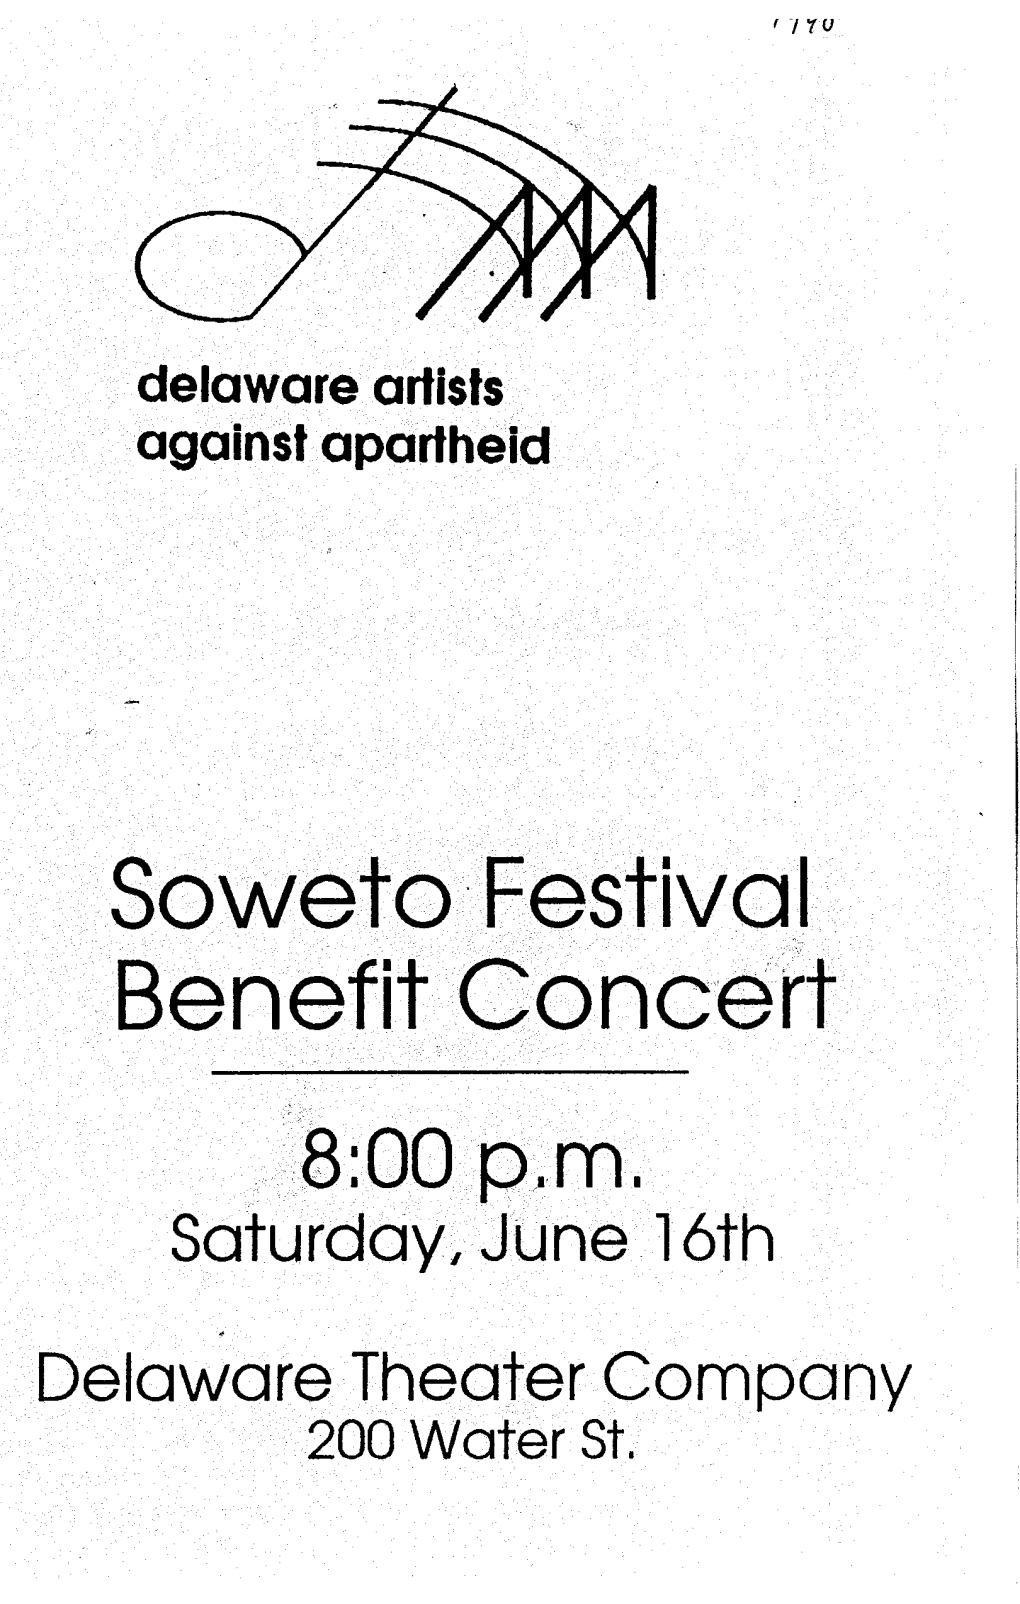 Saturdayi June 16Th Delaware Theater Company